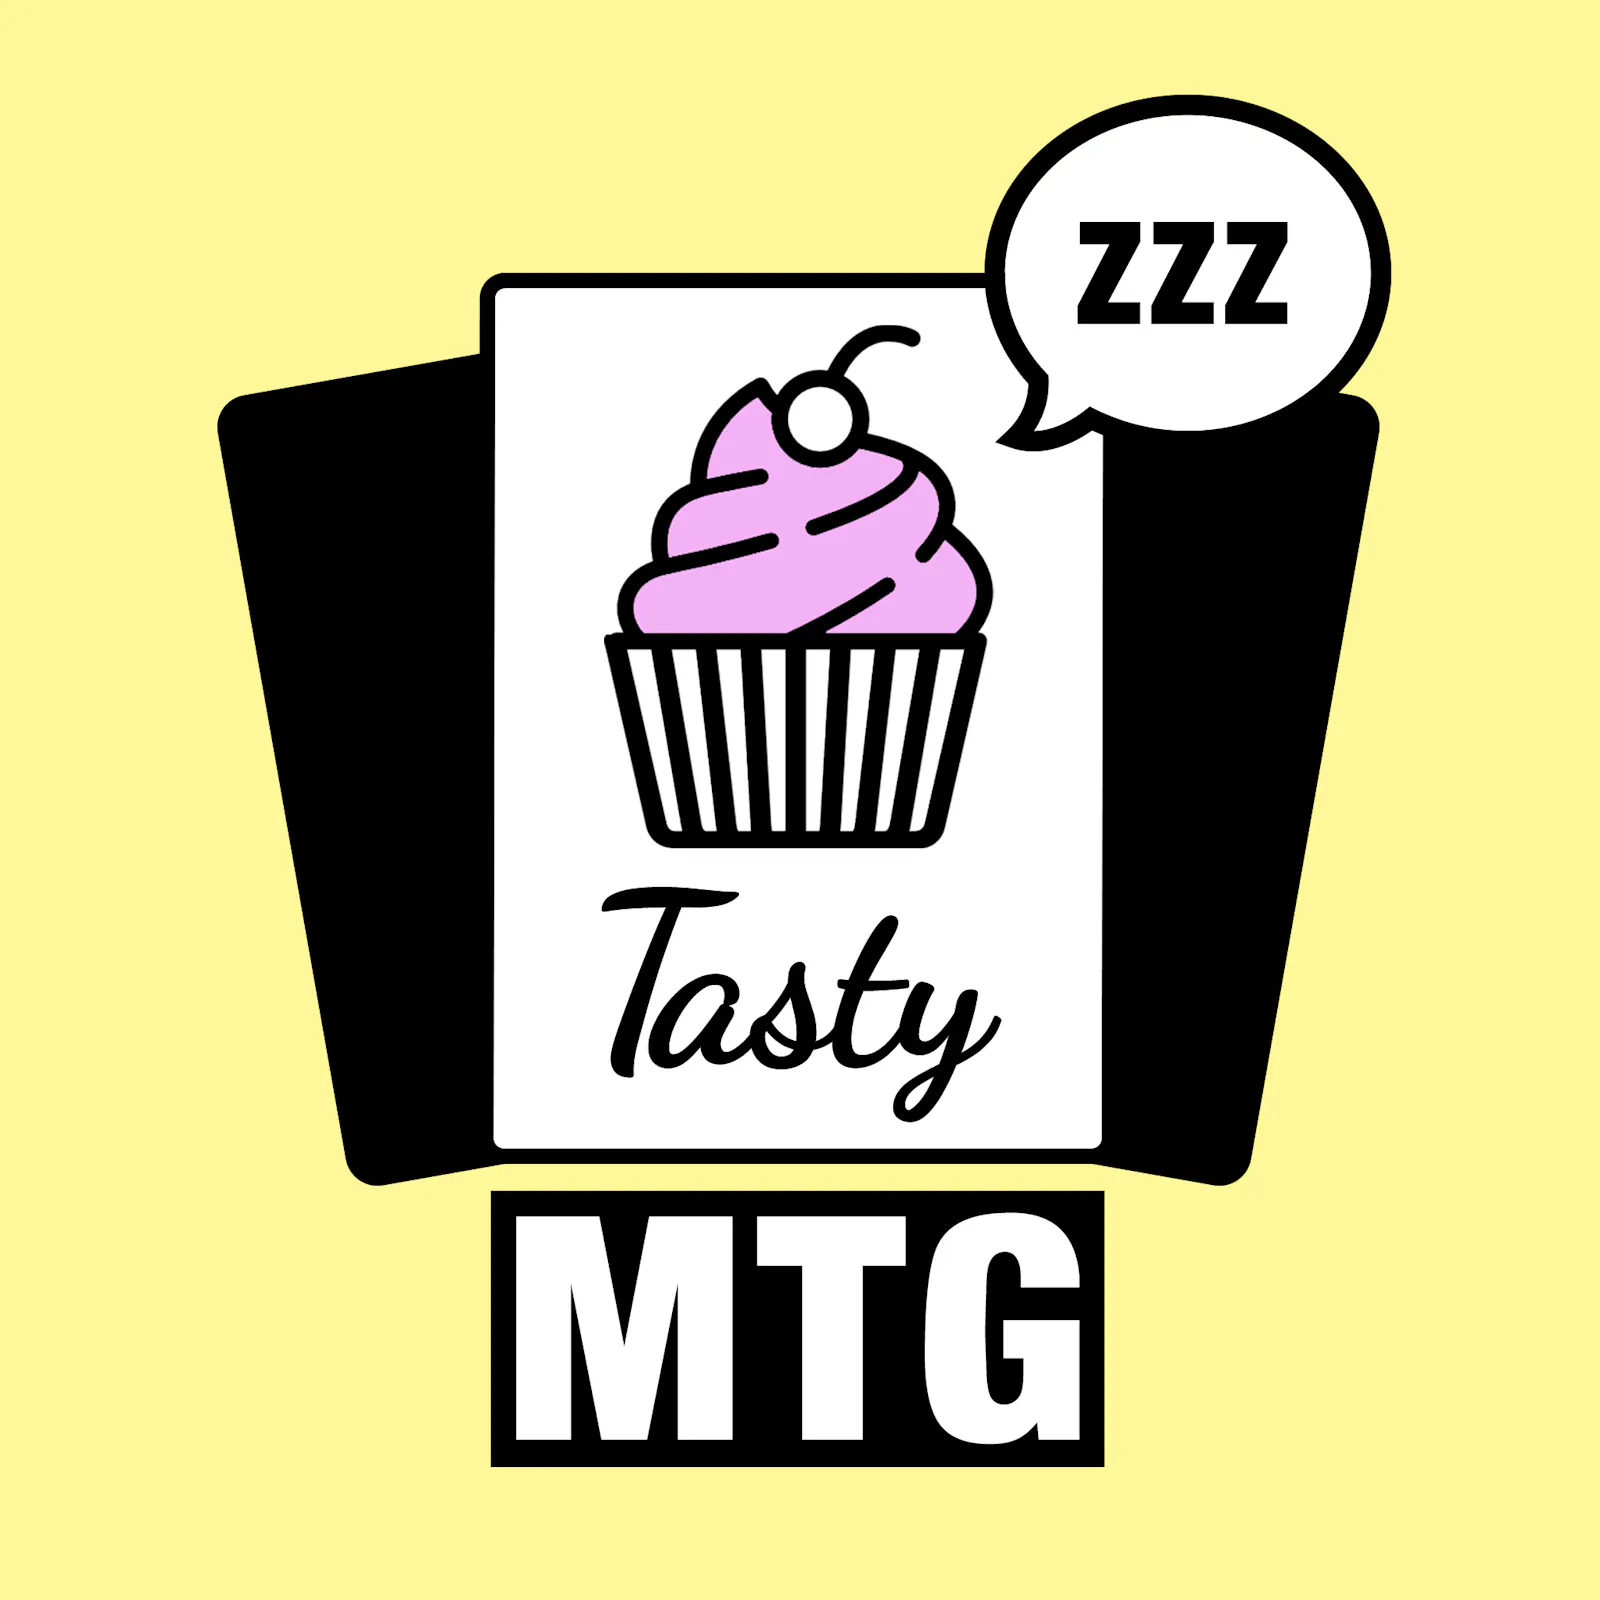 Das Logo zur aktuellen Folge: Der Cupcake ist den bösen Schlummerschlaf verfallen.